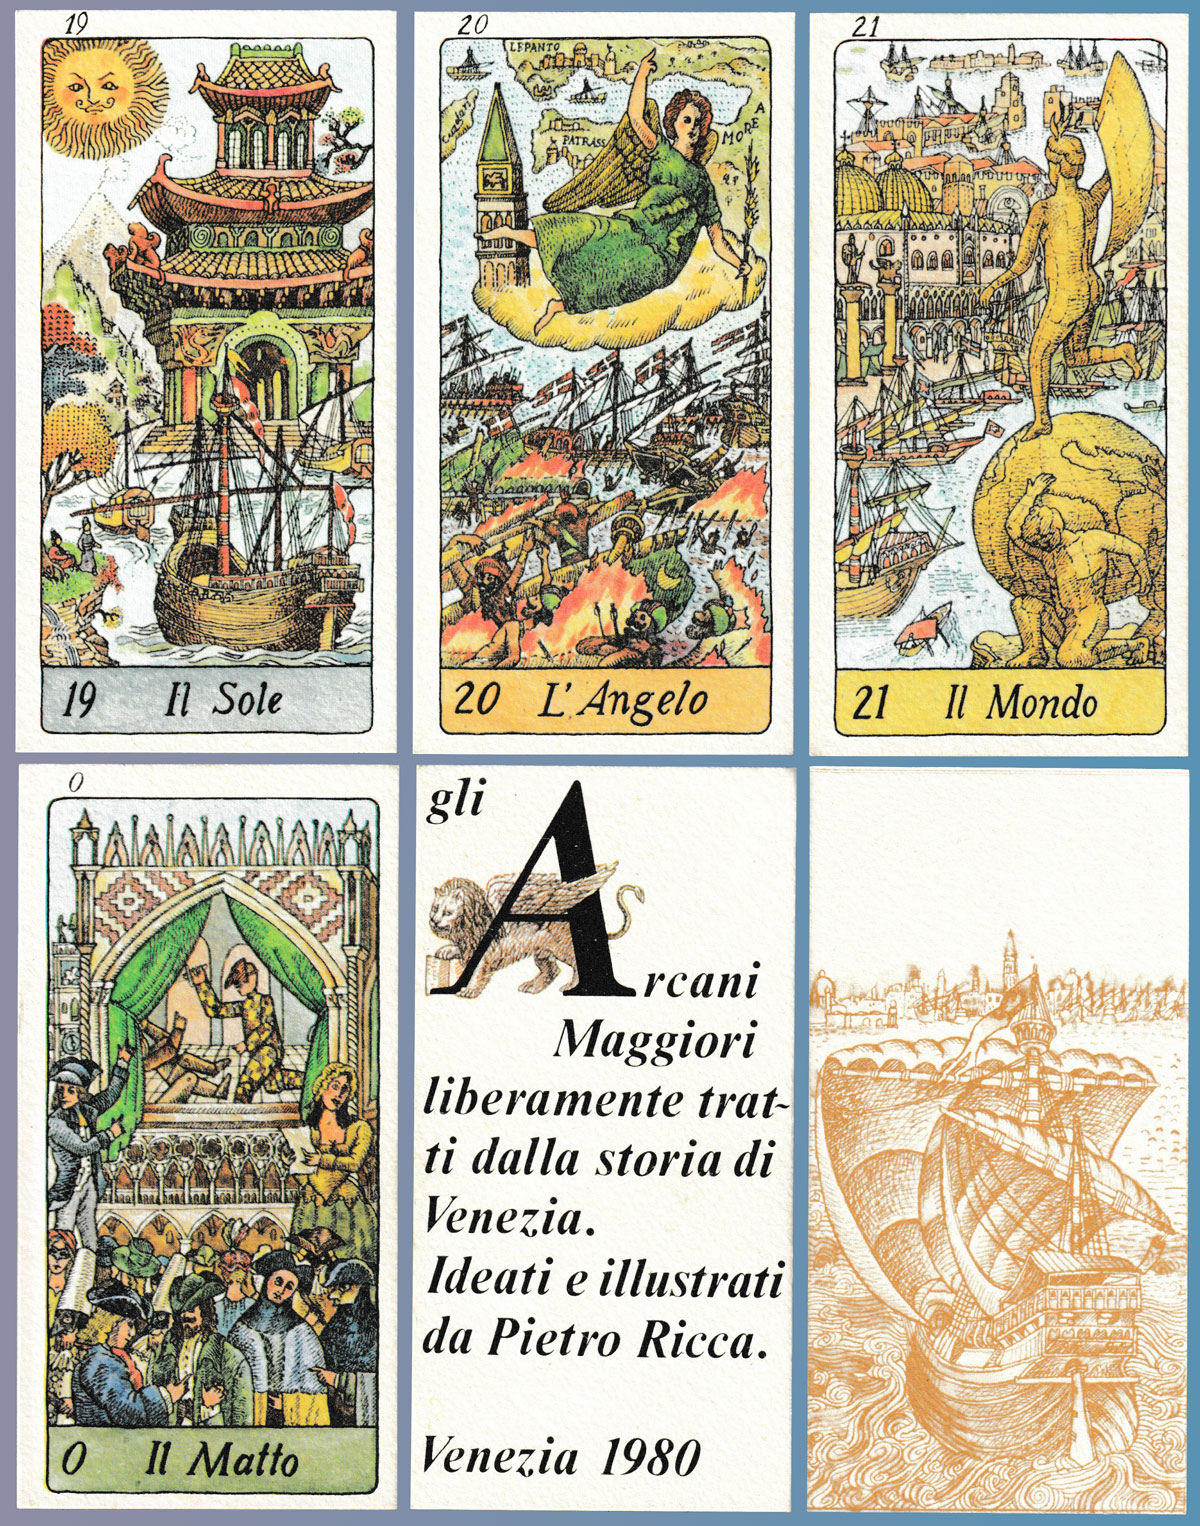 Napoleonic Tarot Stamps - The Tarot Garden